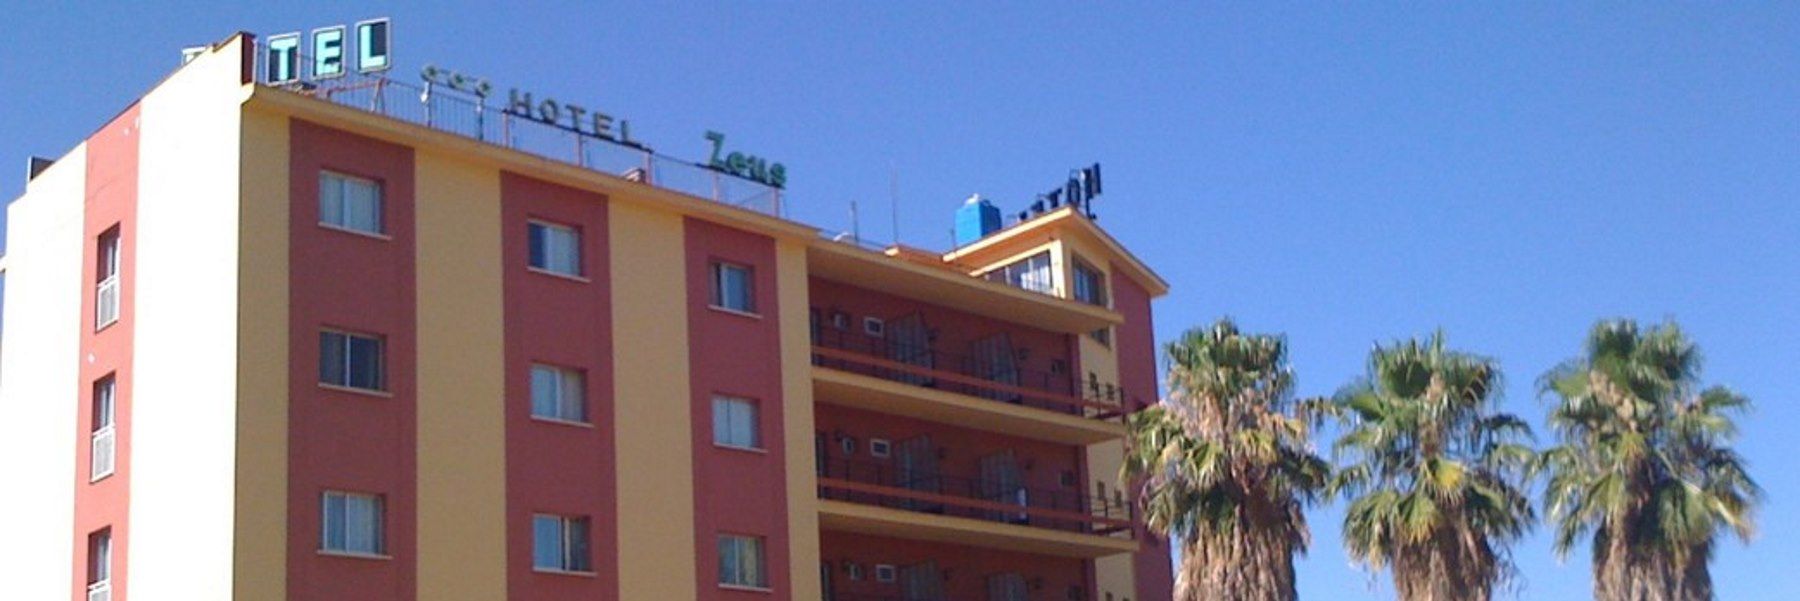 Chollo en hotel Mérida, céntrico. (Merida - BADAJOZ)